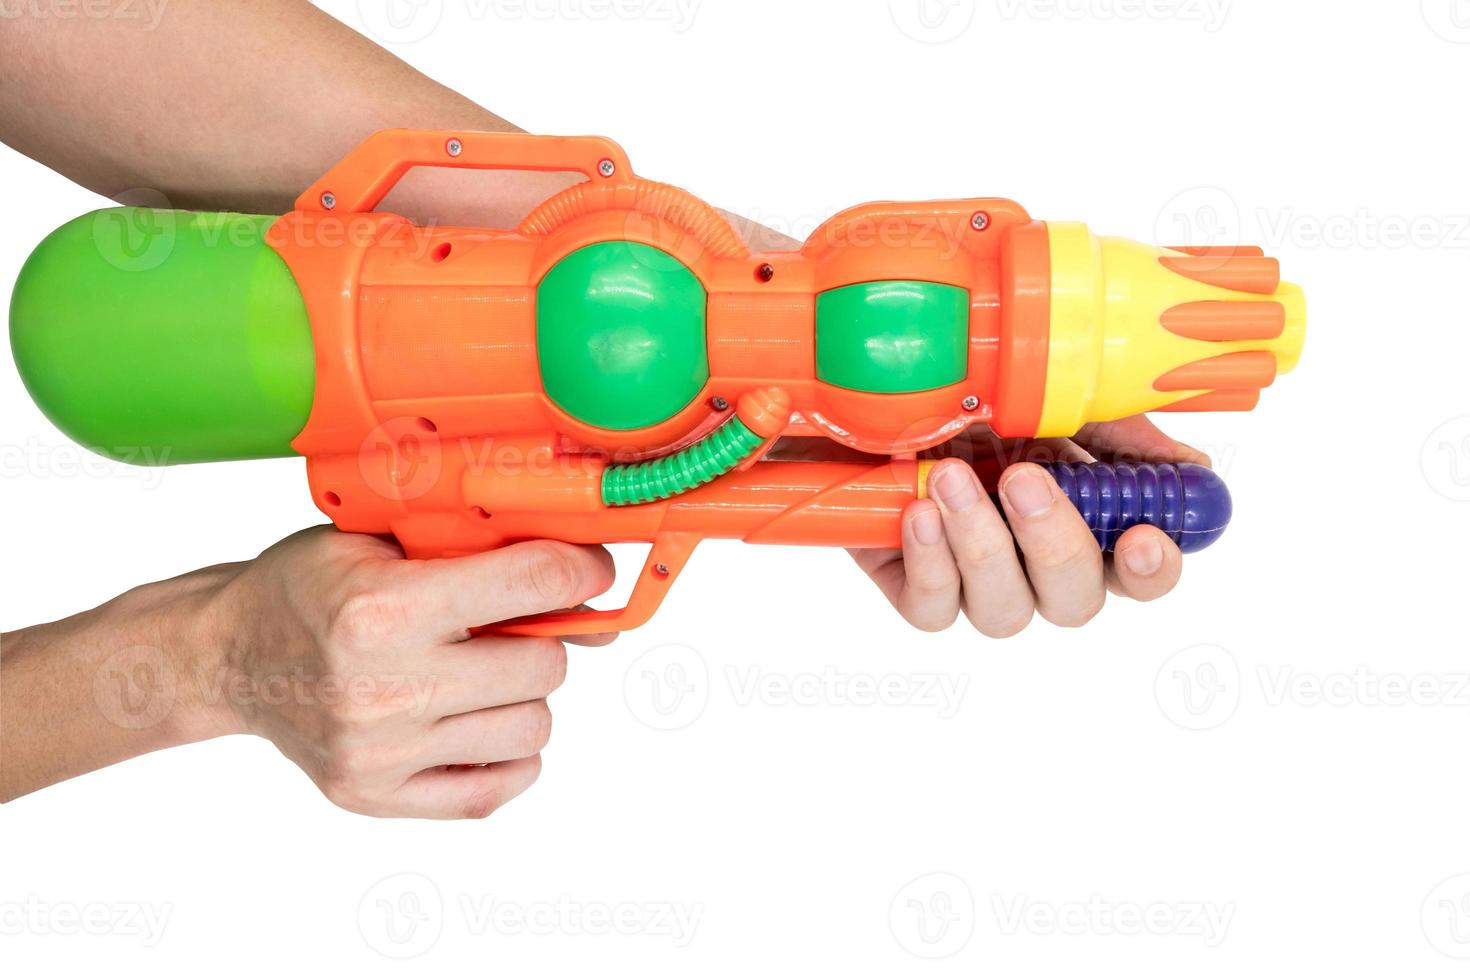 mains tenant un pistolet à eau jouet sur fond blanc. photo